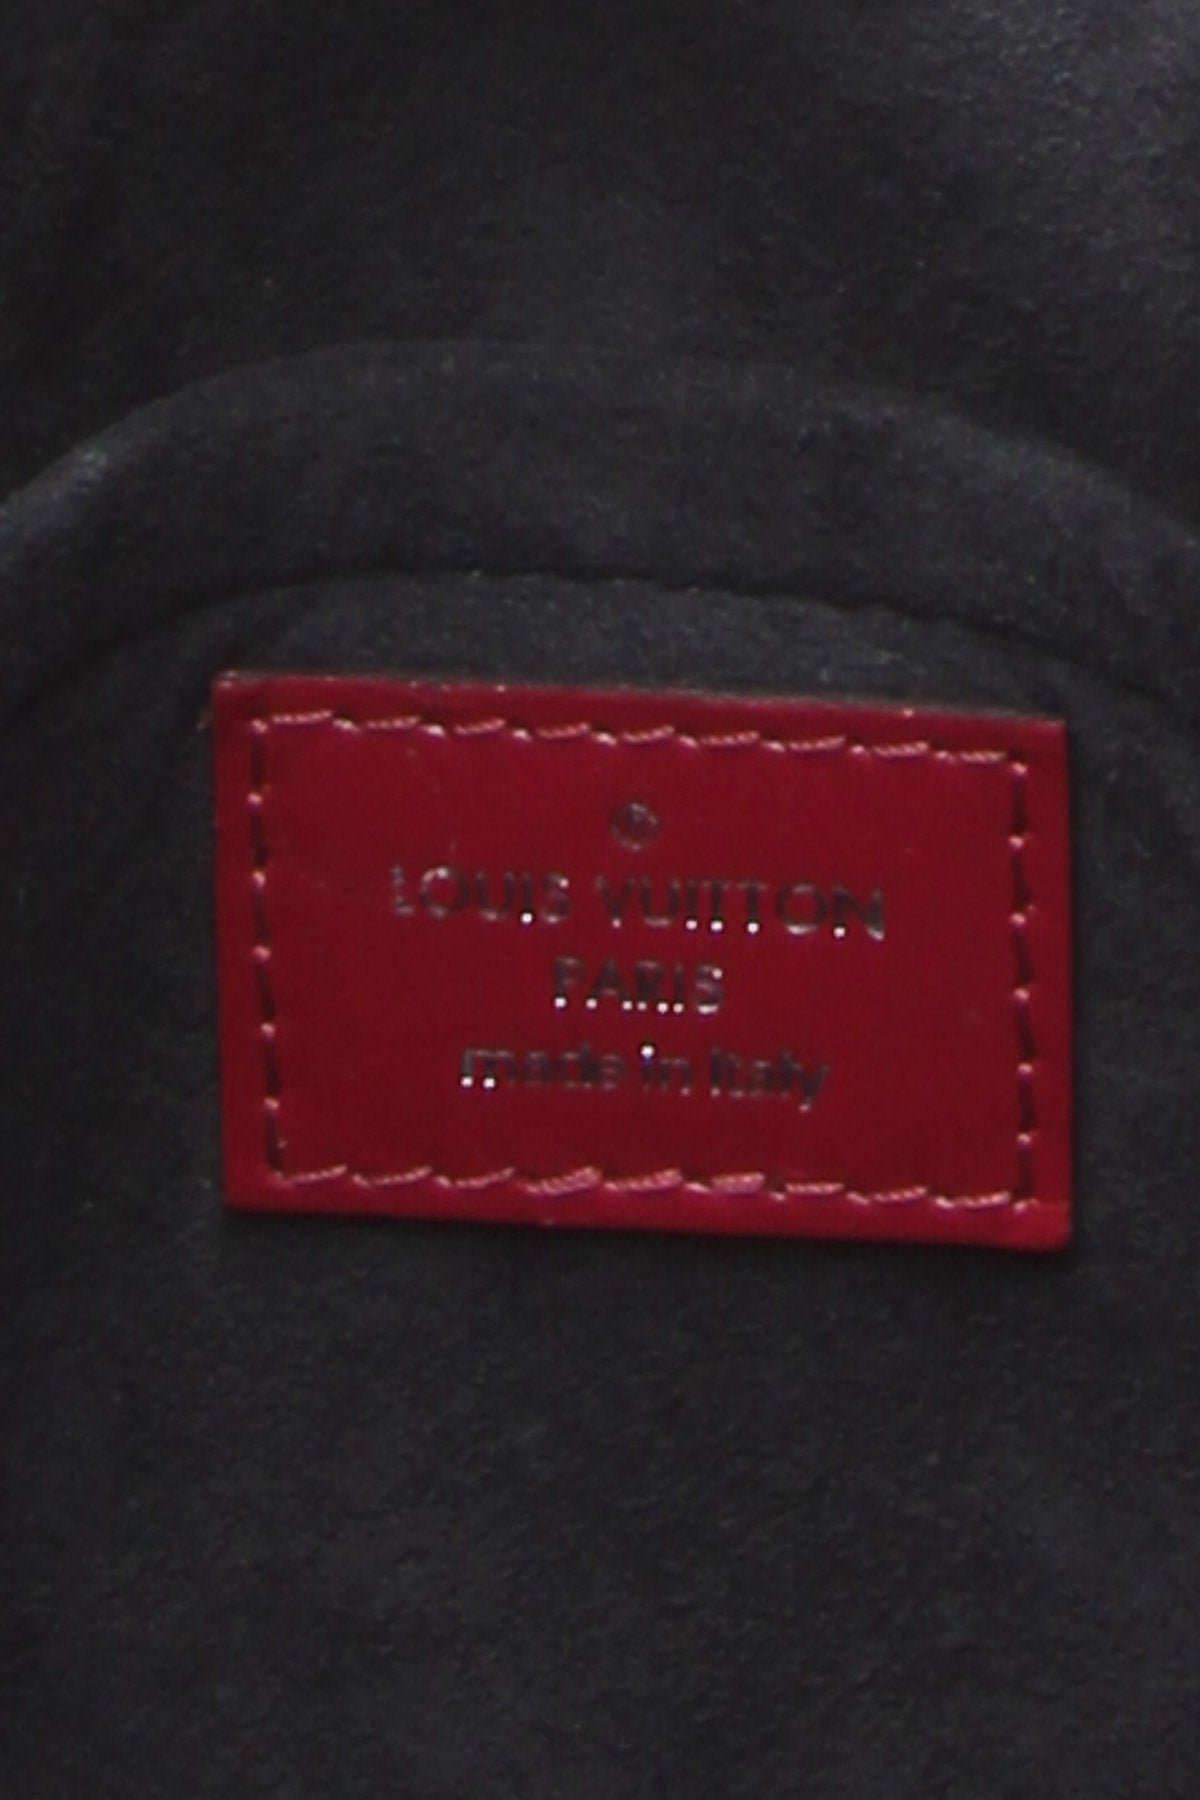 3 Myths About Louis Vuitton